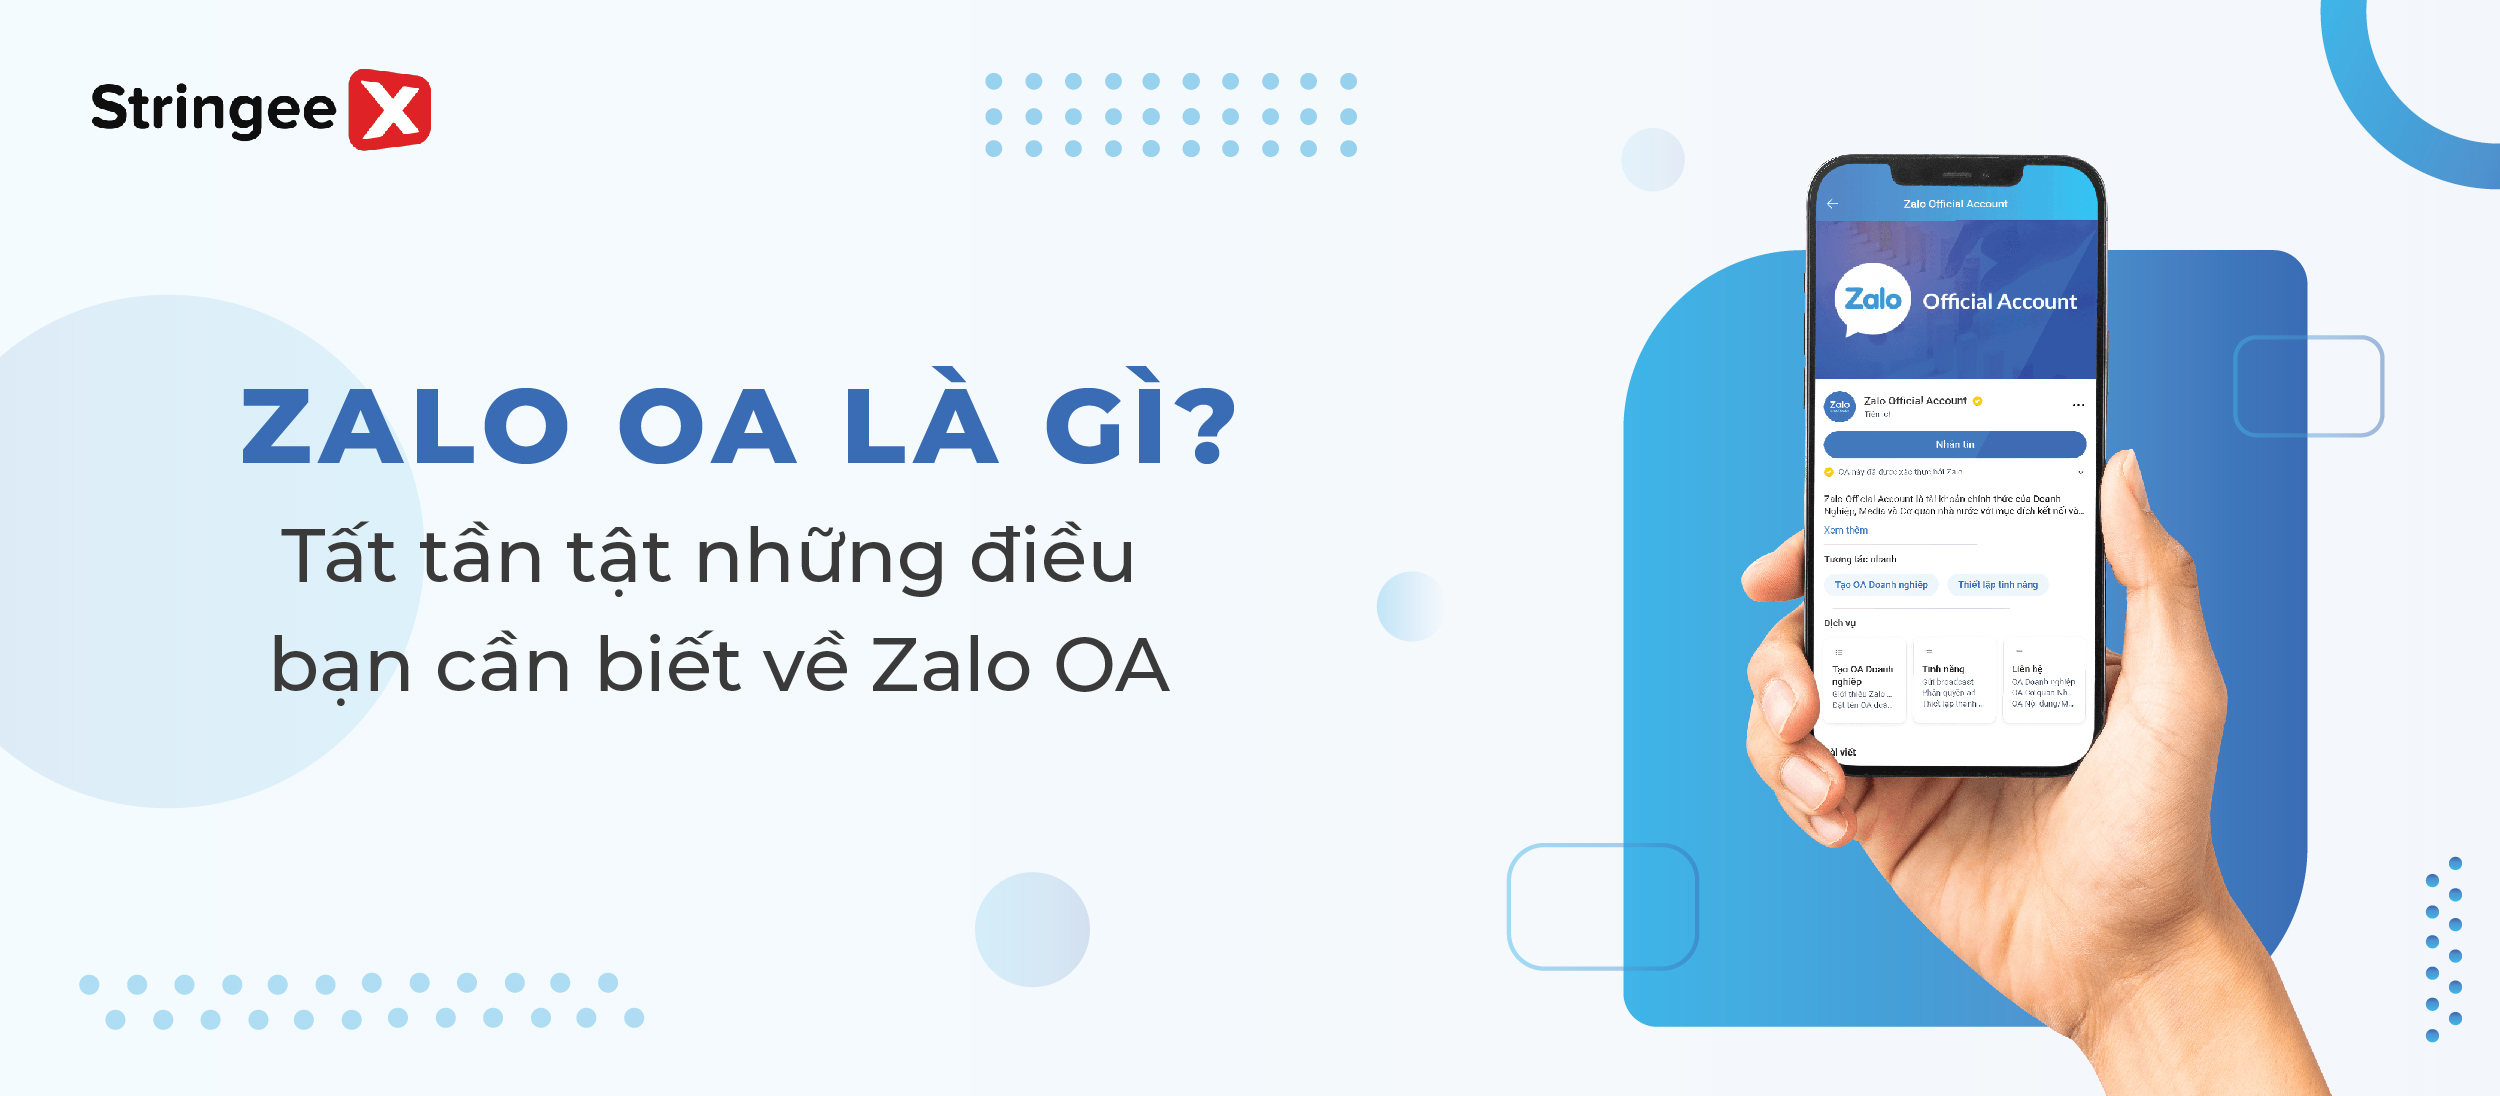 Zalo OA là gì? Tất tần tật những điều bạn cần biết về Zalo OA